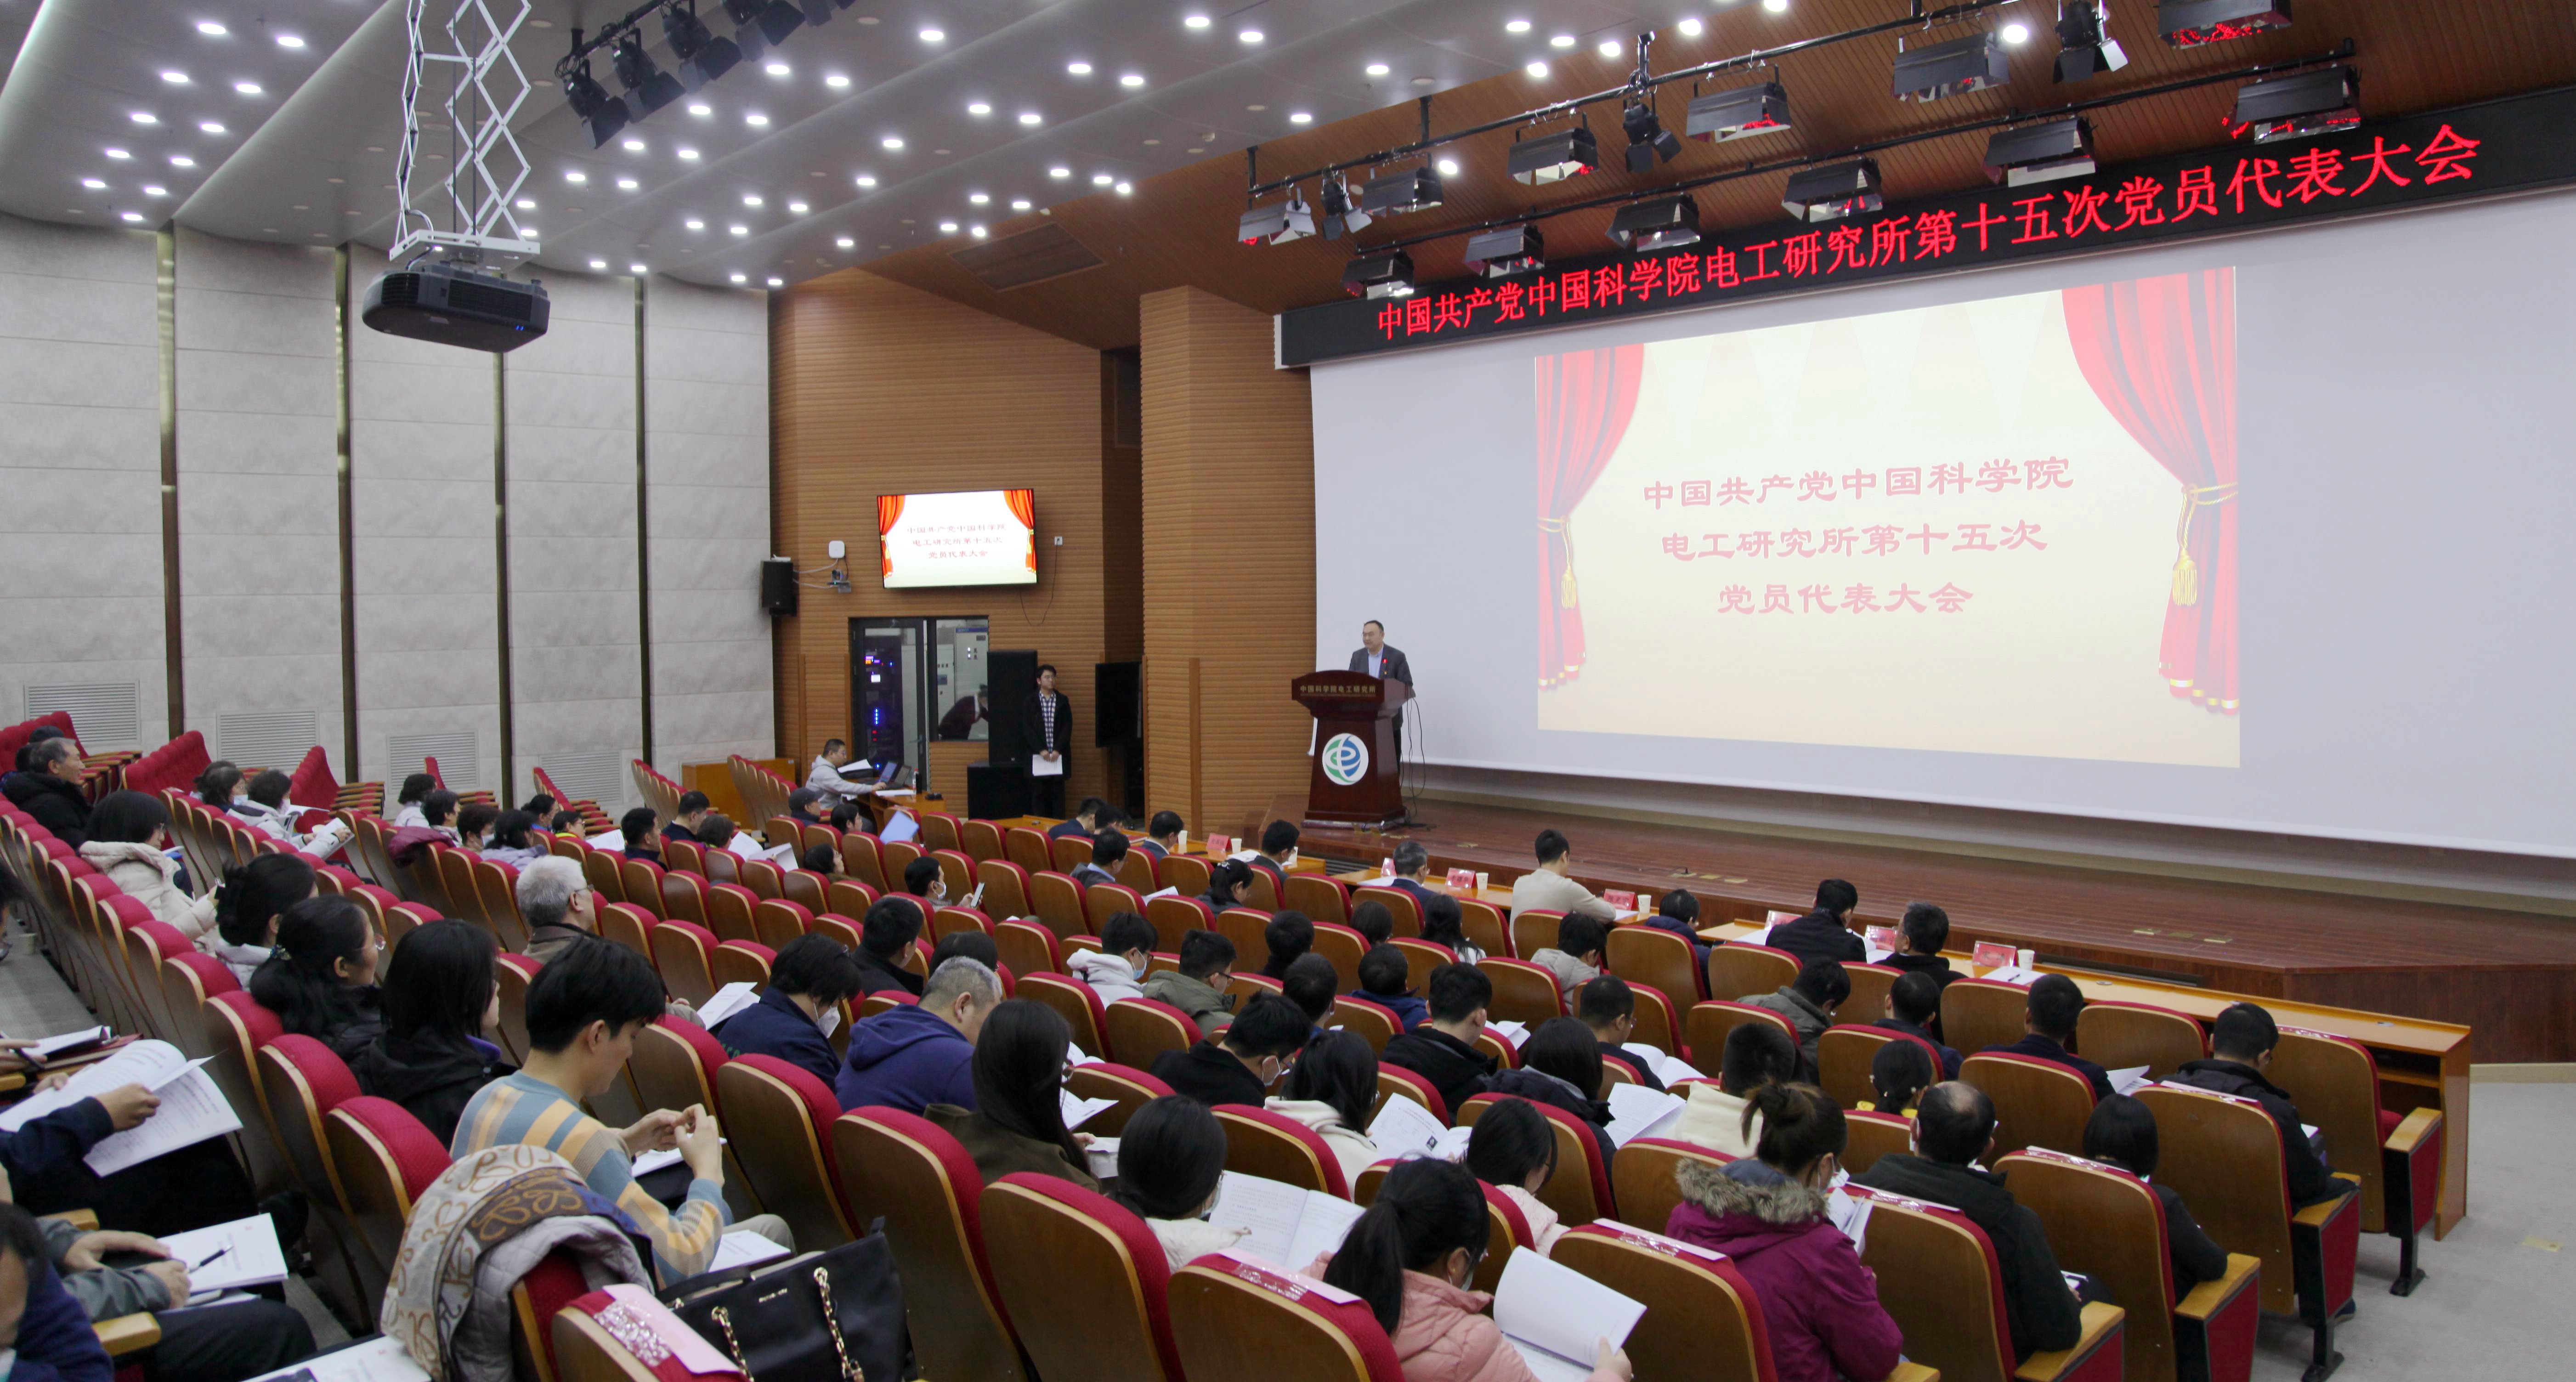 中国共产党中国科学院电工研究所第十五次党员代表大会胜利召开